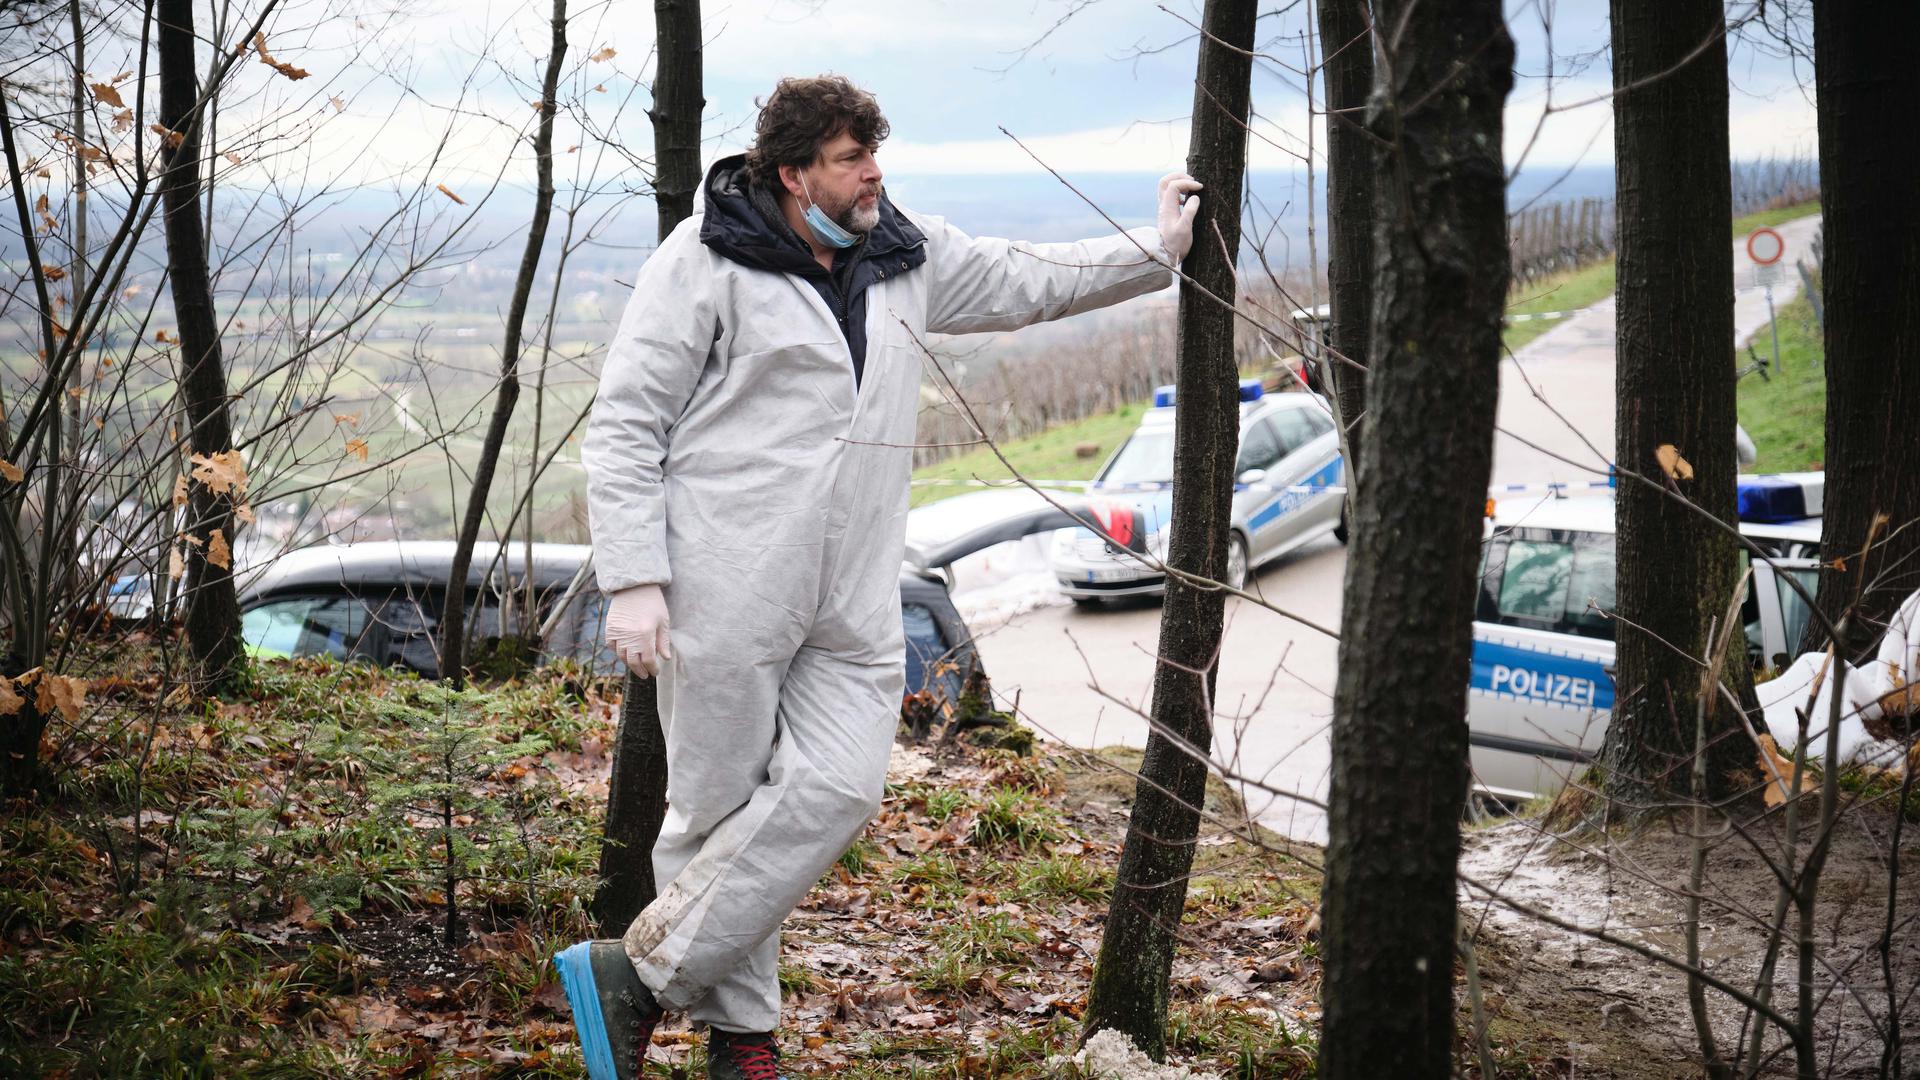 Schauspieler Hans-Jochen Wagner steht Dreharbeiten zum Schwarzwald-Tatort "Das Geständnis" in einem weißen Schutzanzug im Wald.
